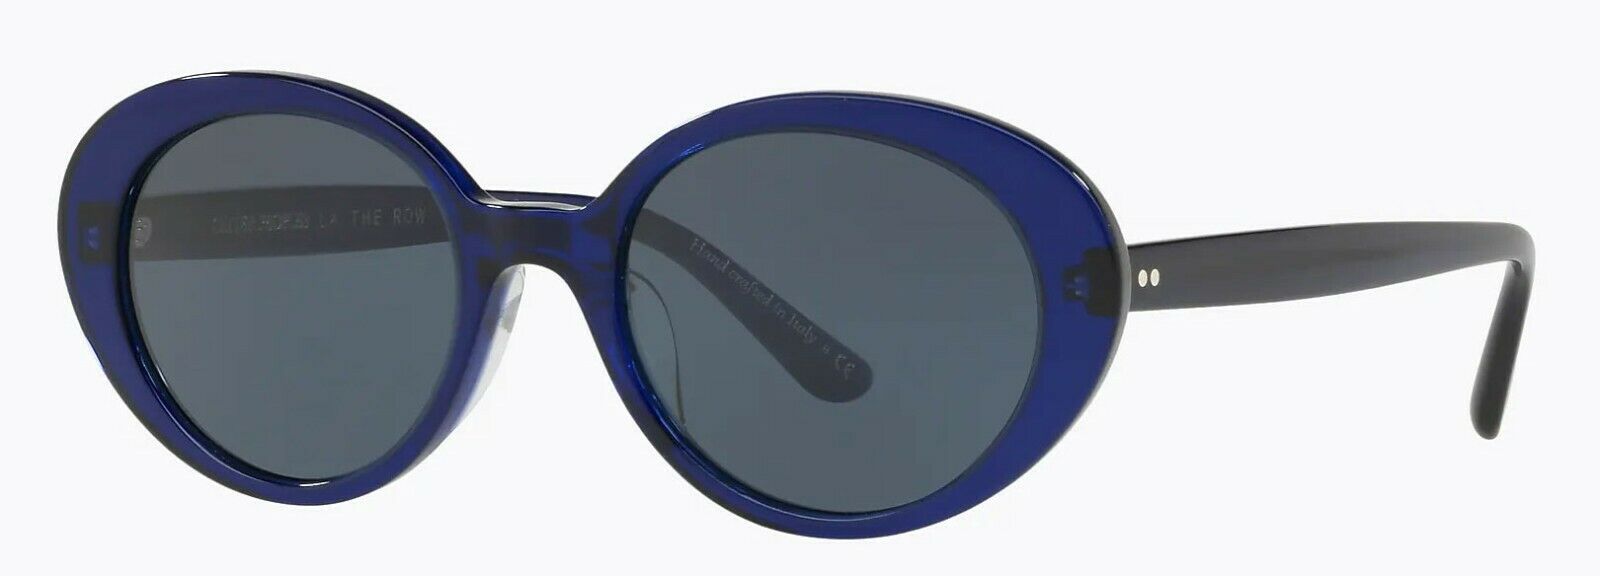 Oliver Peoples Sunglasses 5344SU 1566R5 The Row Parquet Denim Blue / Blue 50mm-827934419865-classypw.com-1